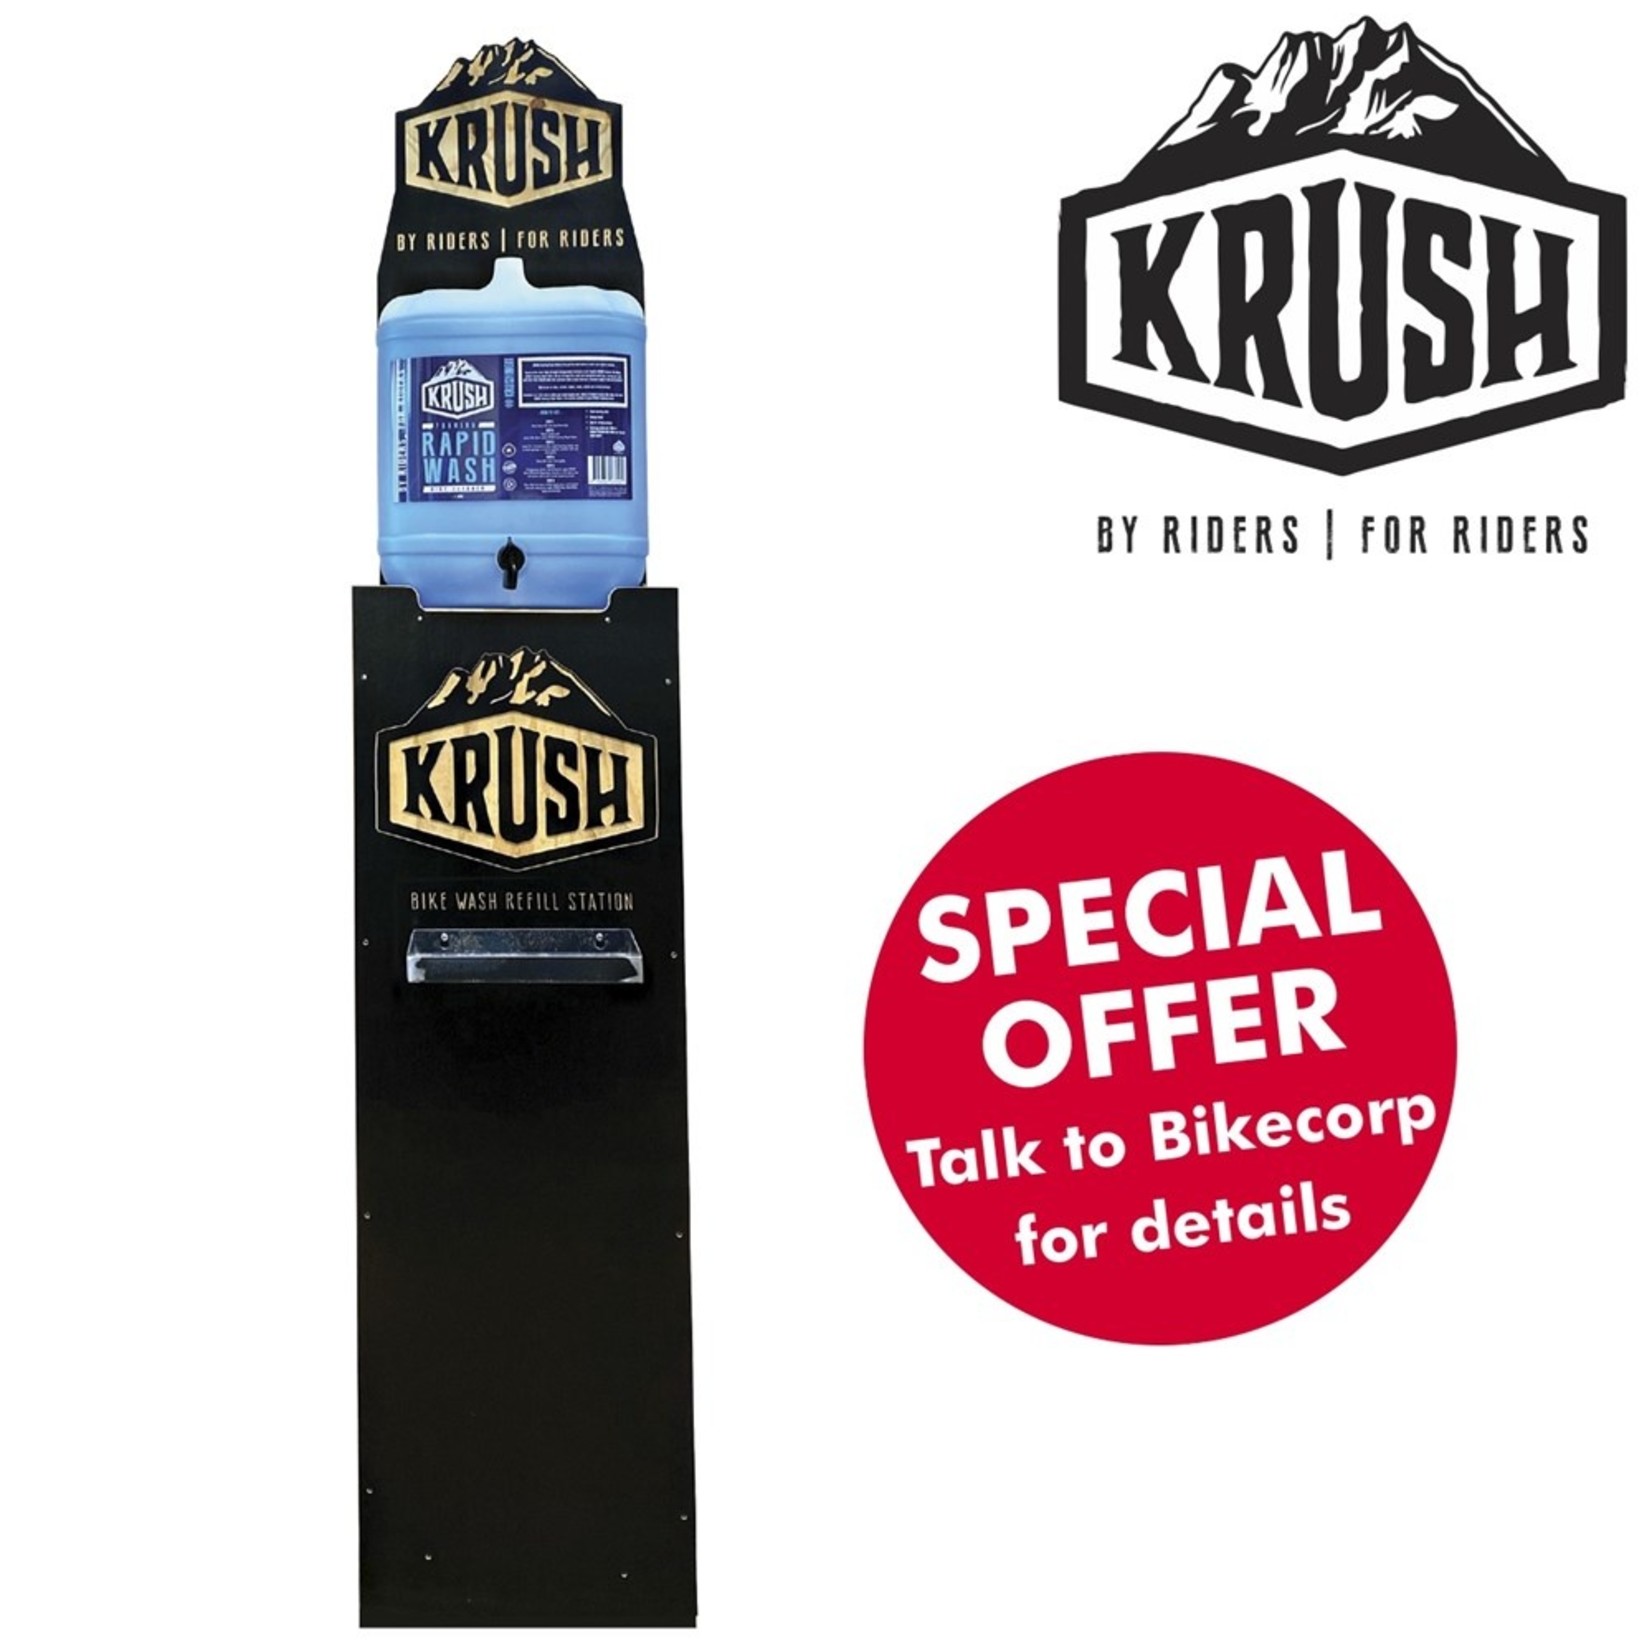 krush Krush Refilling Station Rapid Wash Bottles Instore Stand